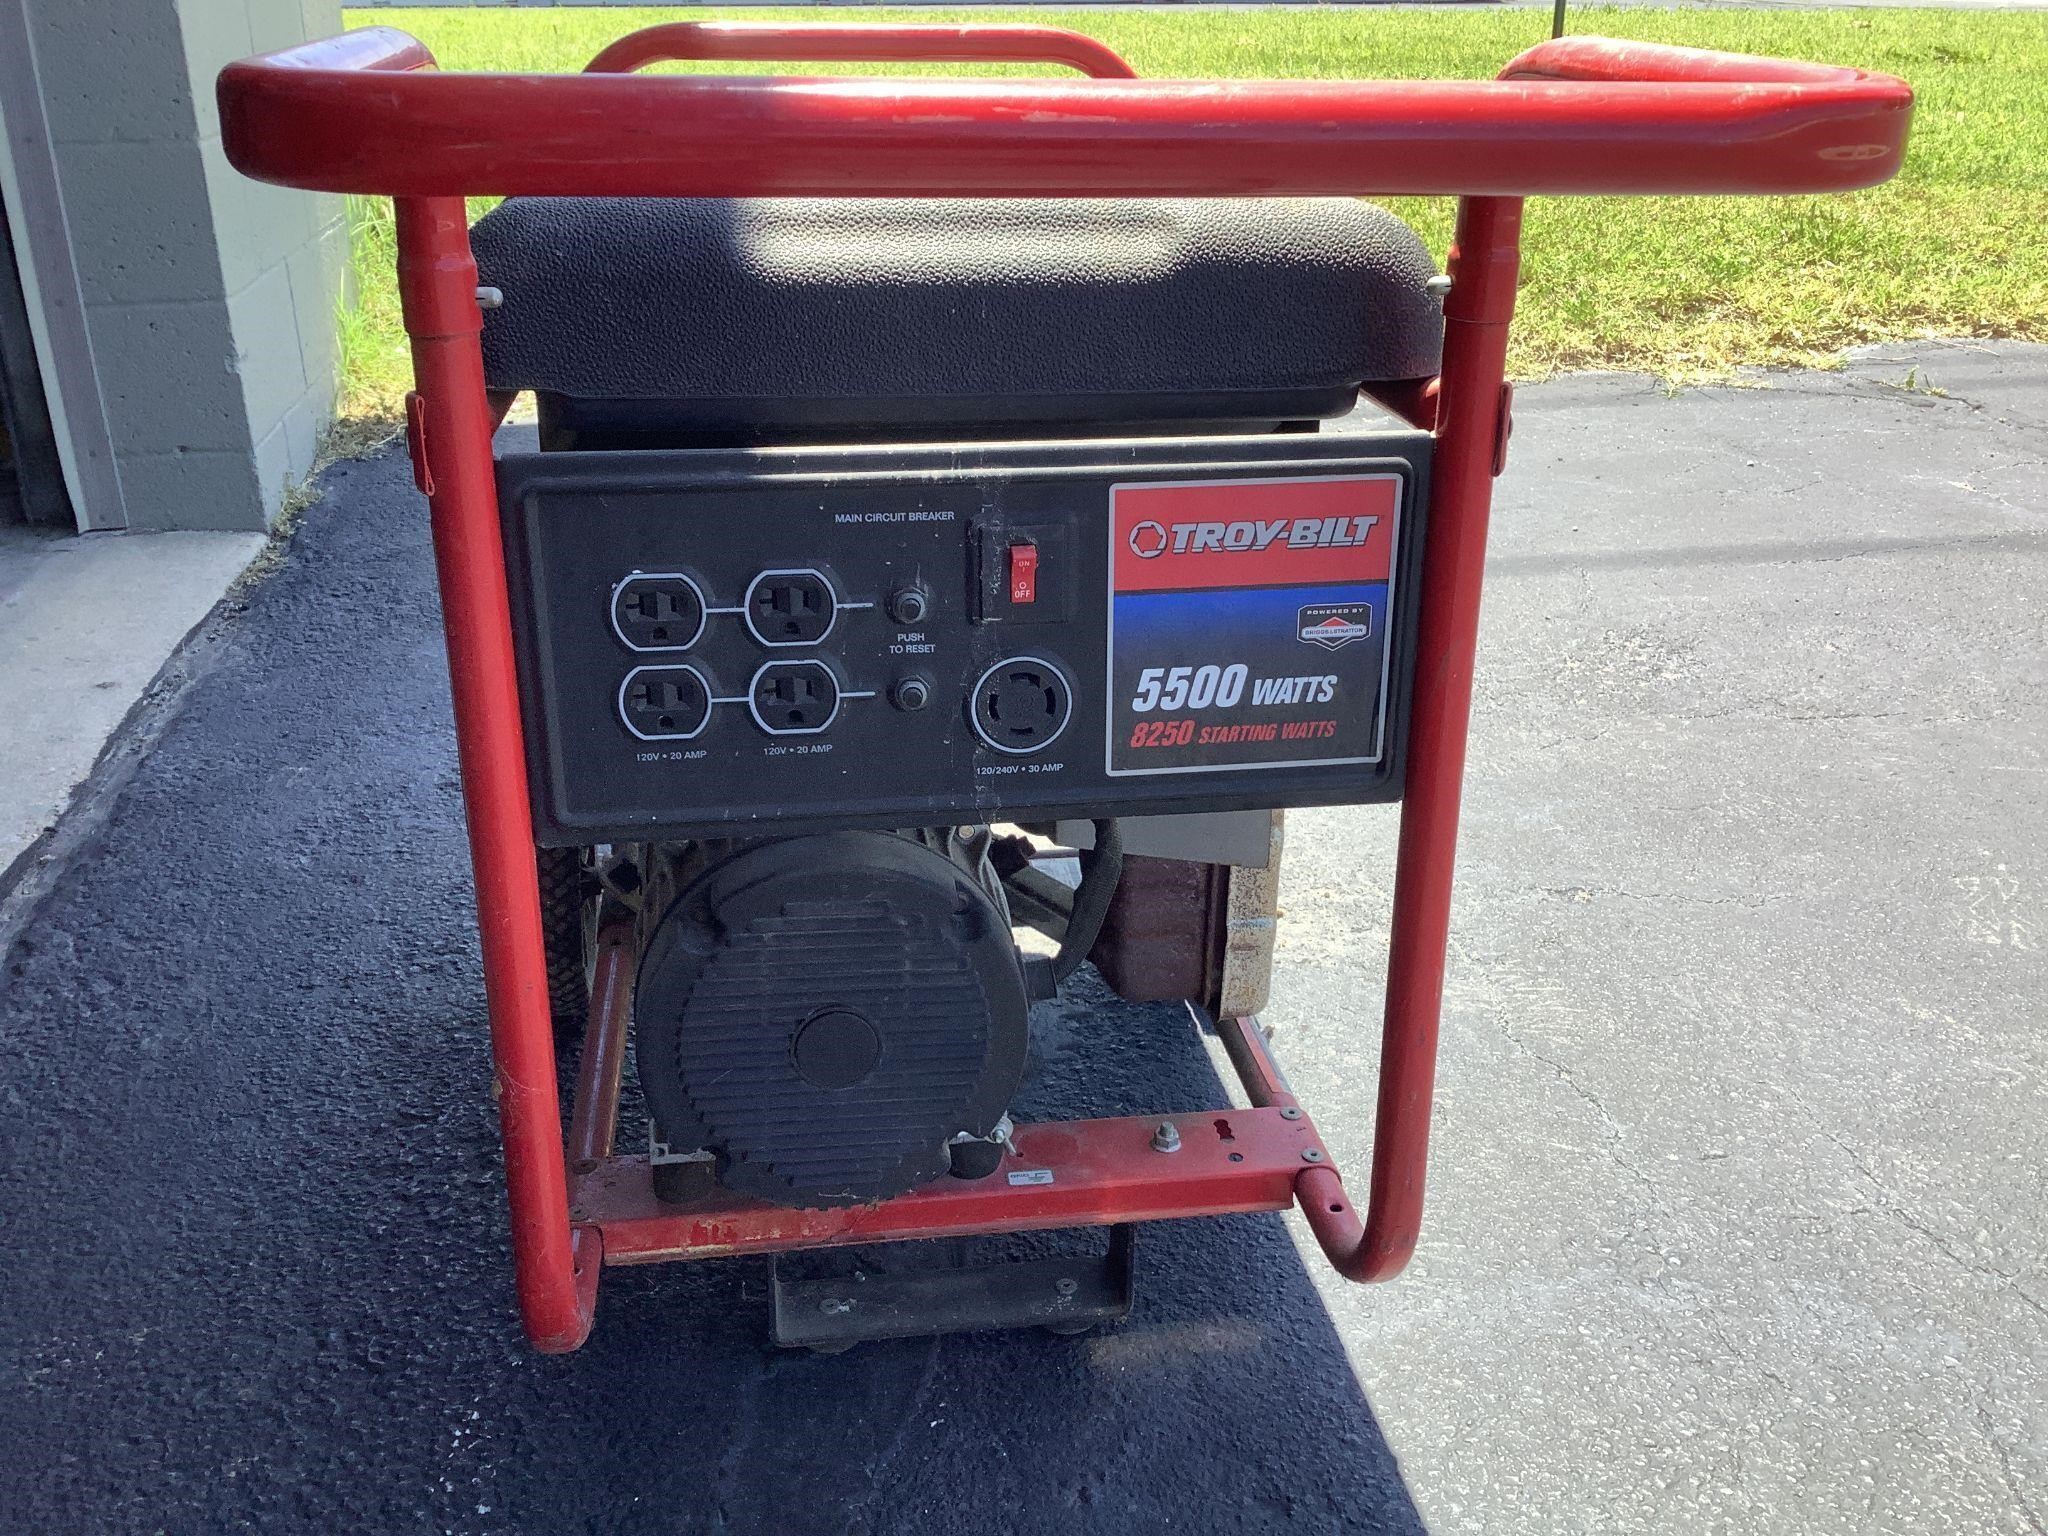 Troy Bilt generator 5500 watts model 030433